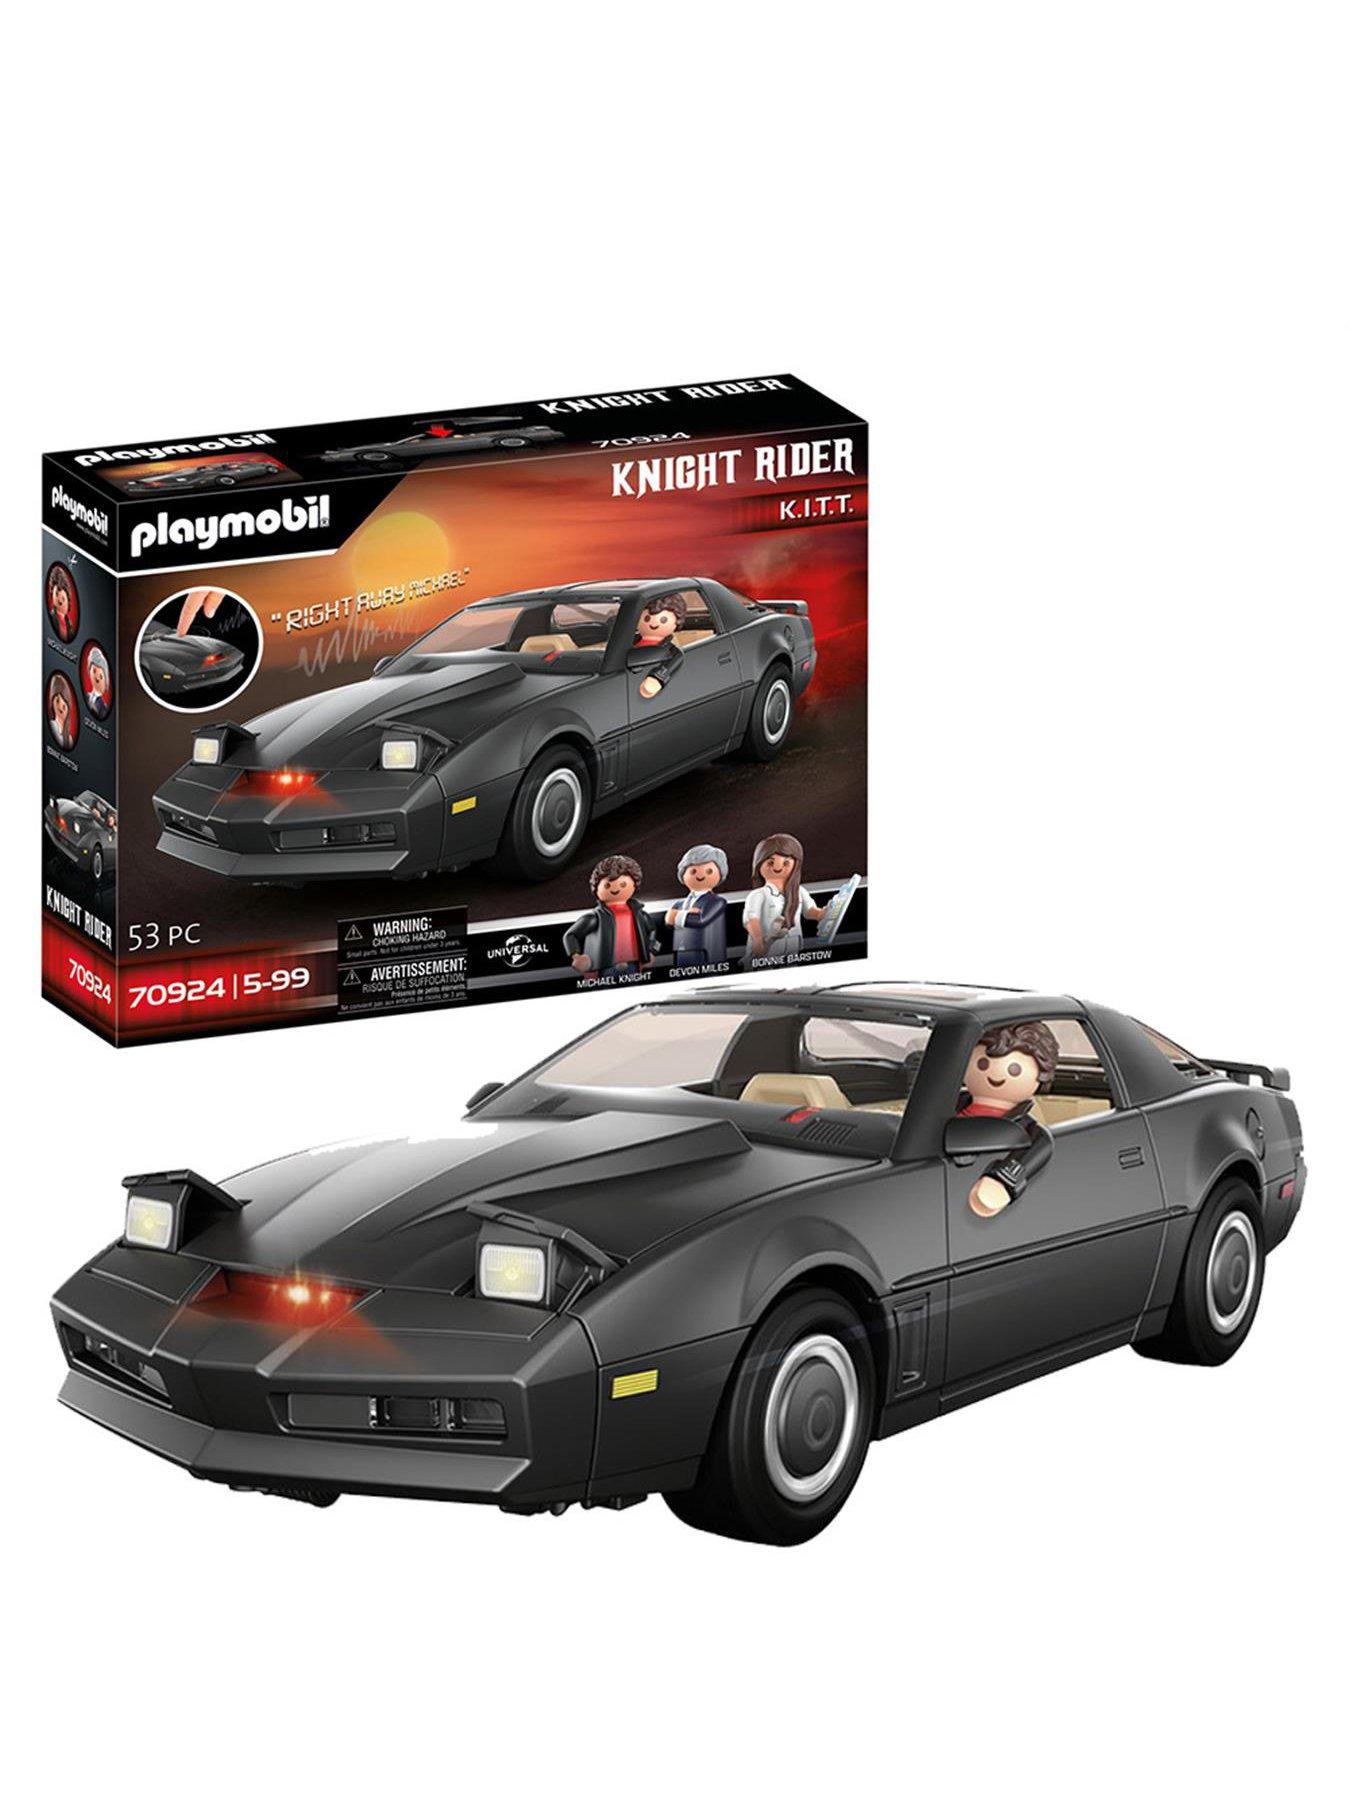 PLAYMOBIL 70924 Knight Rider - K.I.T.T, Mit original Licht und